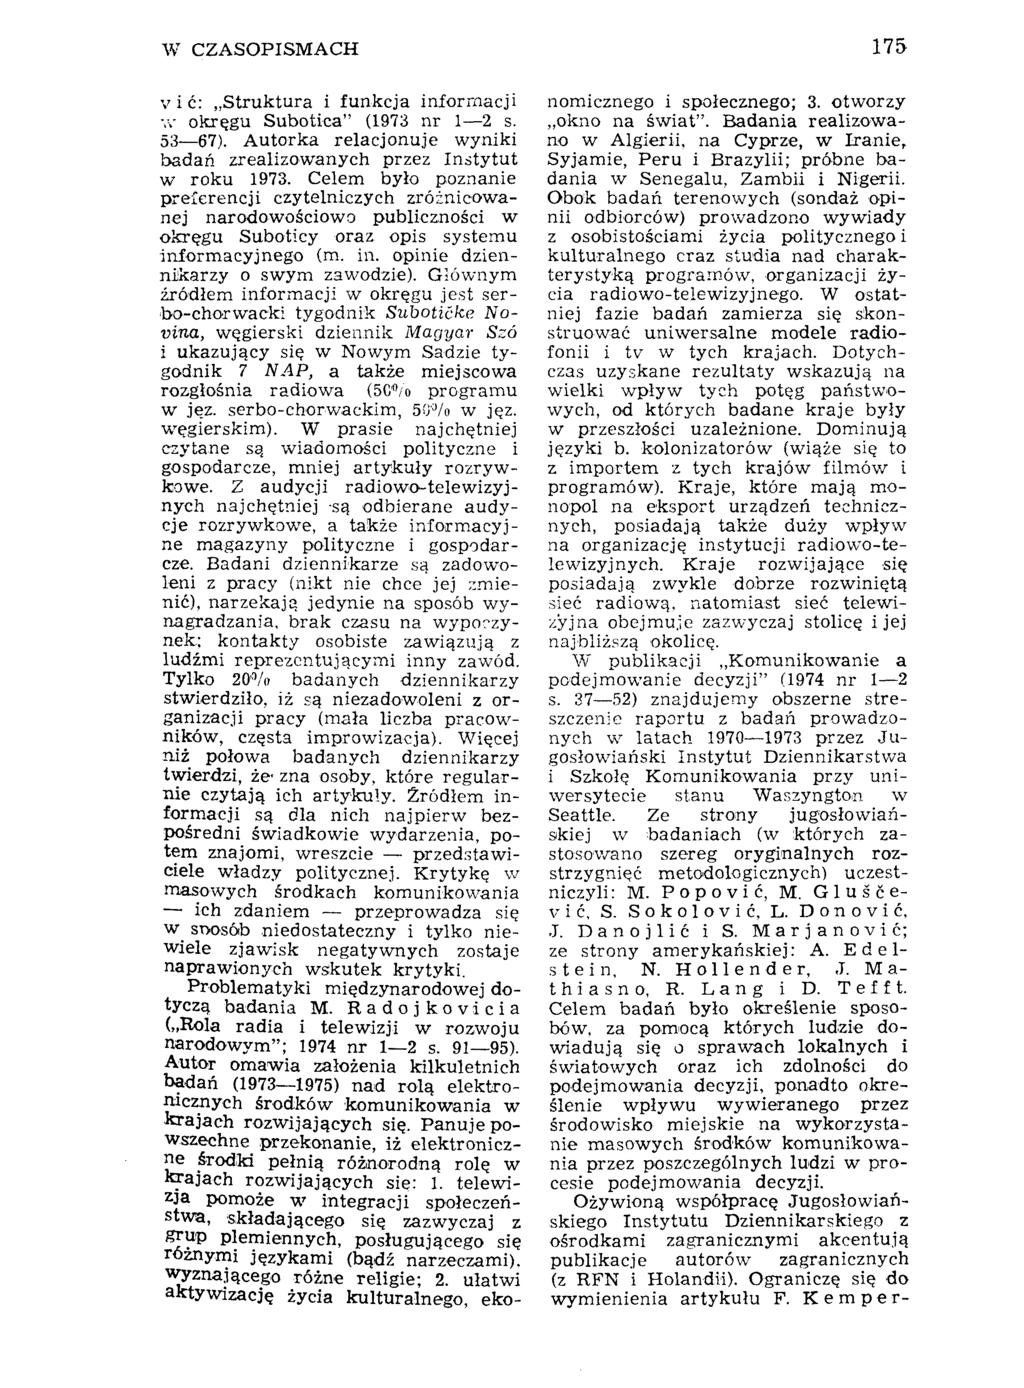 W CZASOPISMACH 175 v i ć: Struktura i funkcja informacji л- okręgu Subotica" (1973 nr 1 2 s. 53 67). Autorka relacjonuje wyniki badań zrealizowanych przez Instytut w roku 1973.